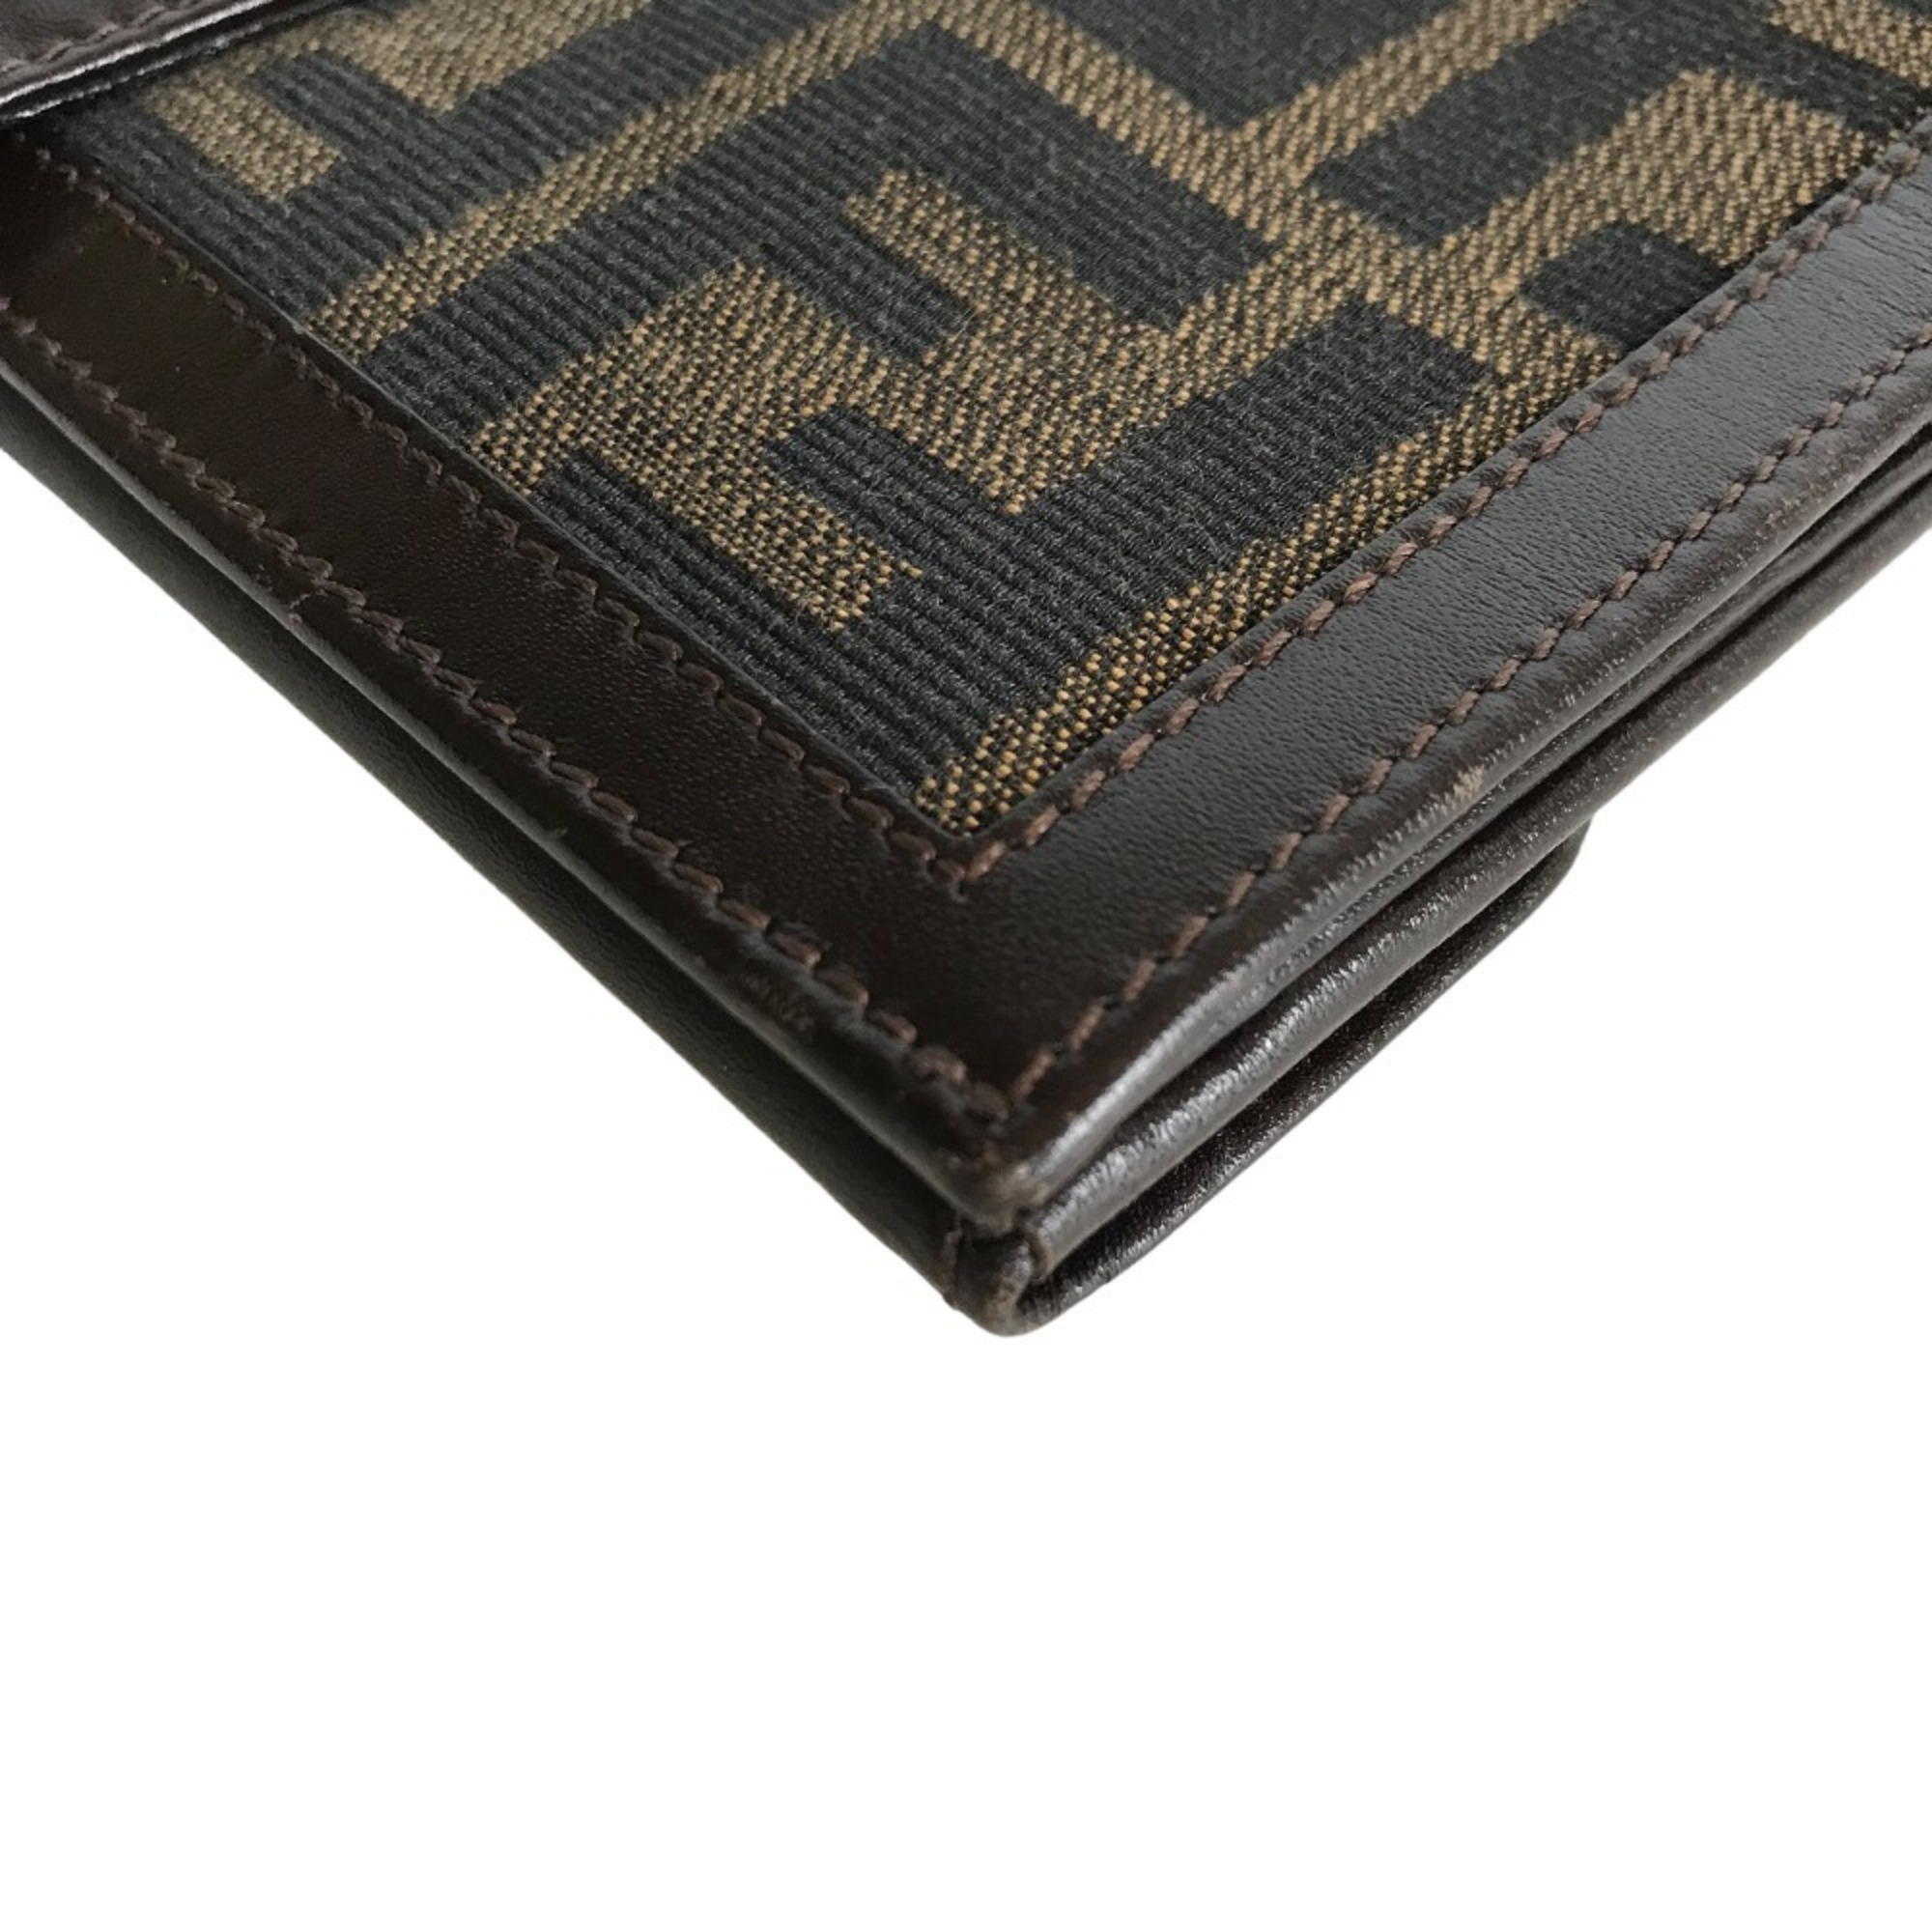 FENDI Zucca Long Wallet for Women, Canvas, Brown, Bi-fold, 660 9980 1988